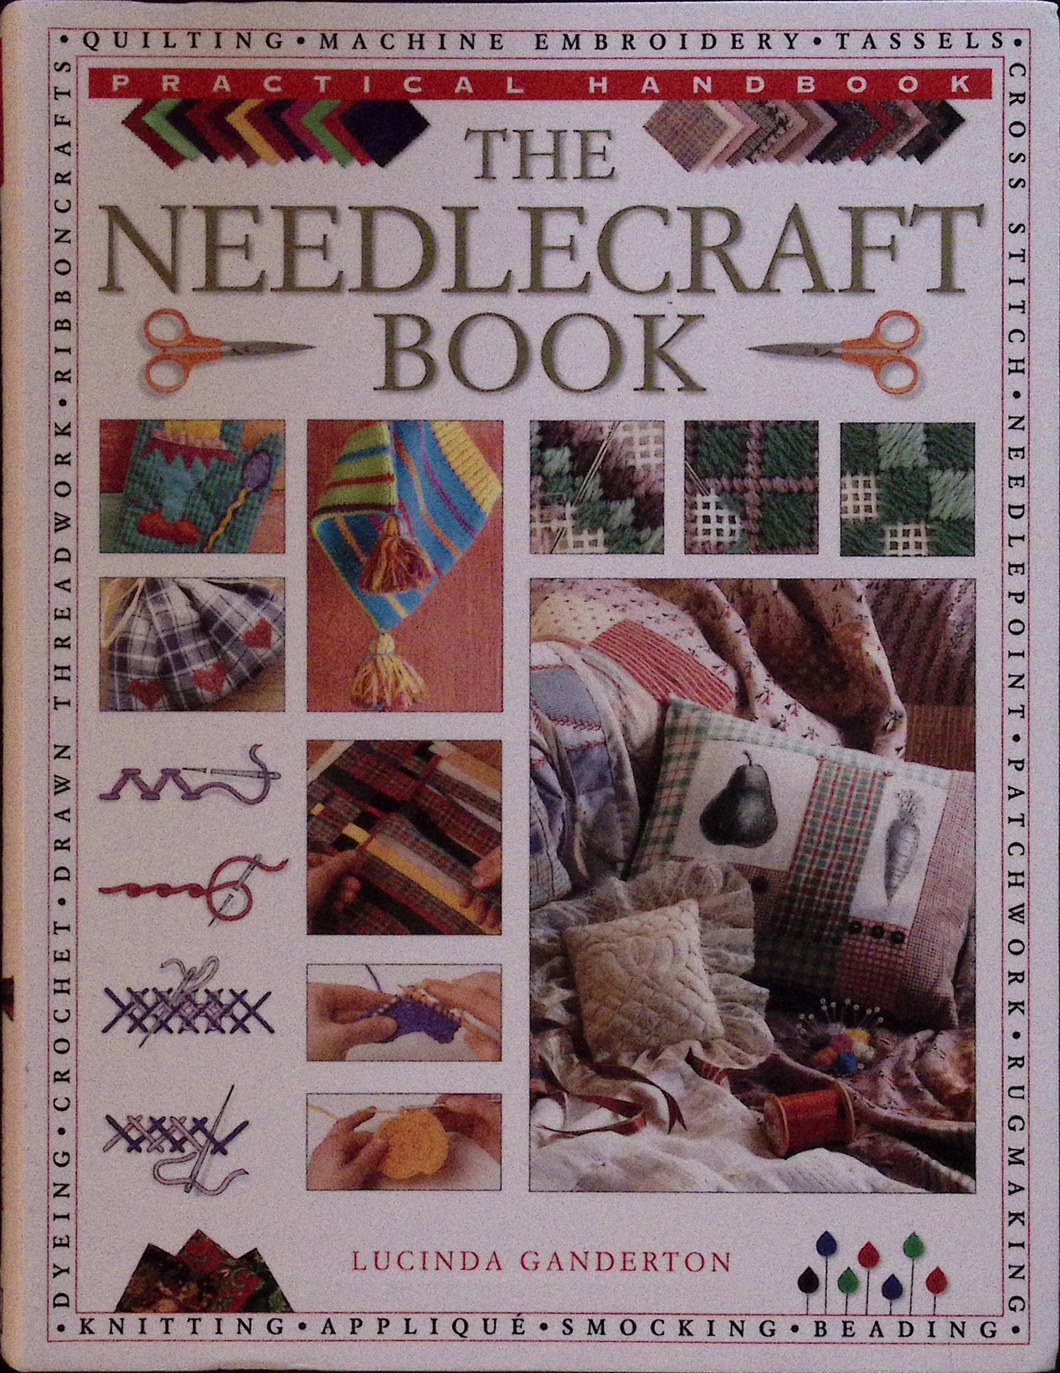 The Needlecraft Book by Lucinda Ganderton